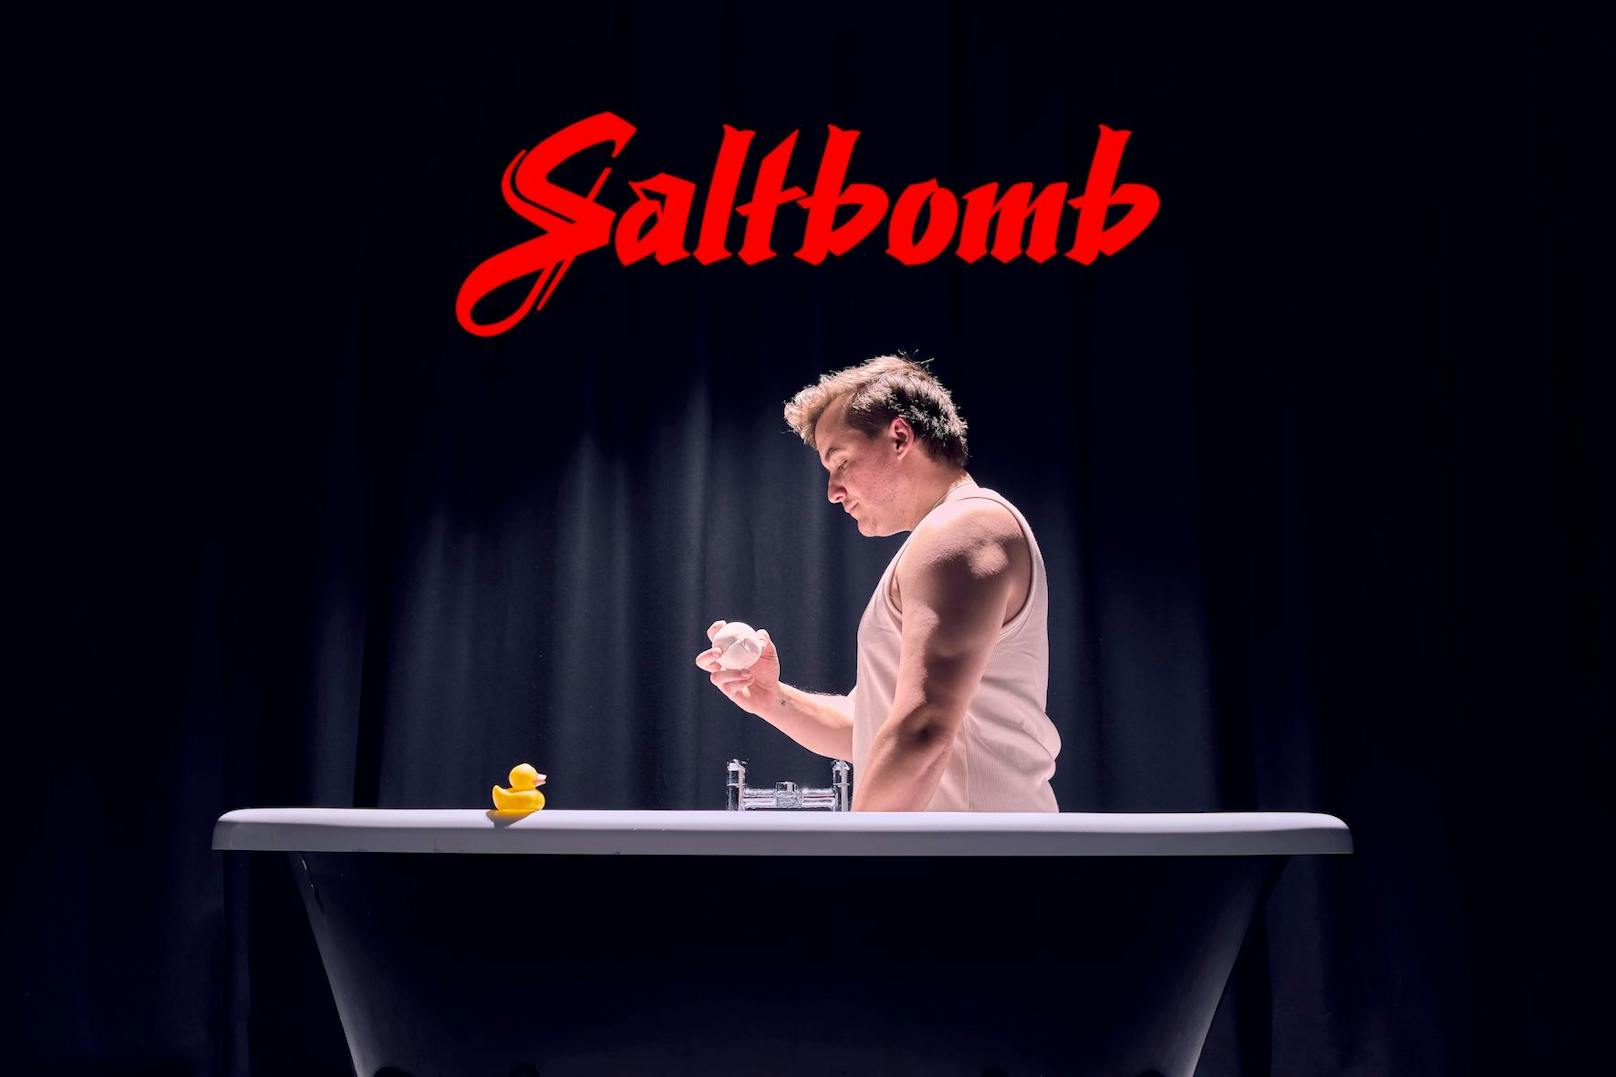 Dem Filmposter von "Saltburn" nachempfunden, wurde die Werbung von Lush für ihre limitierte "Saltbomb".